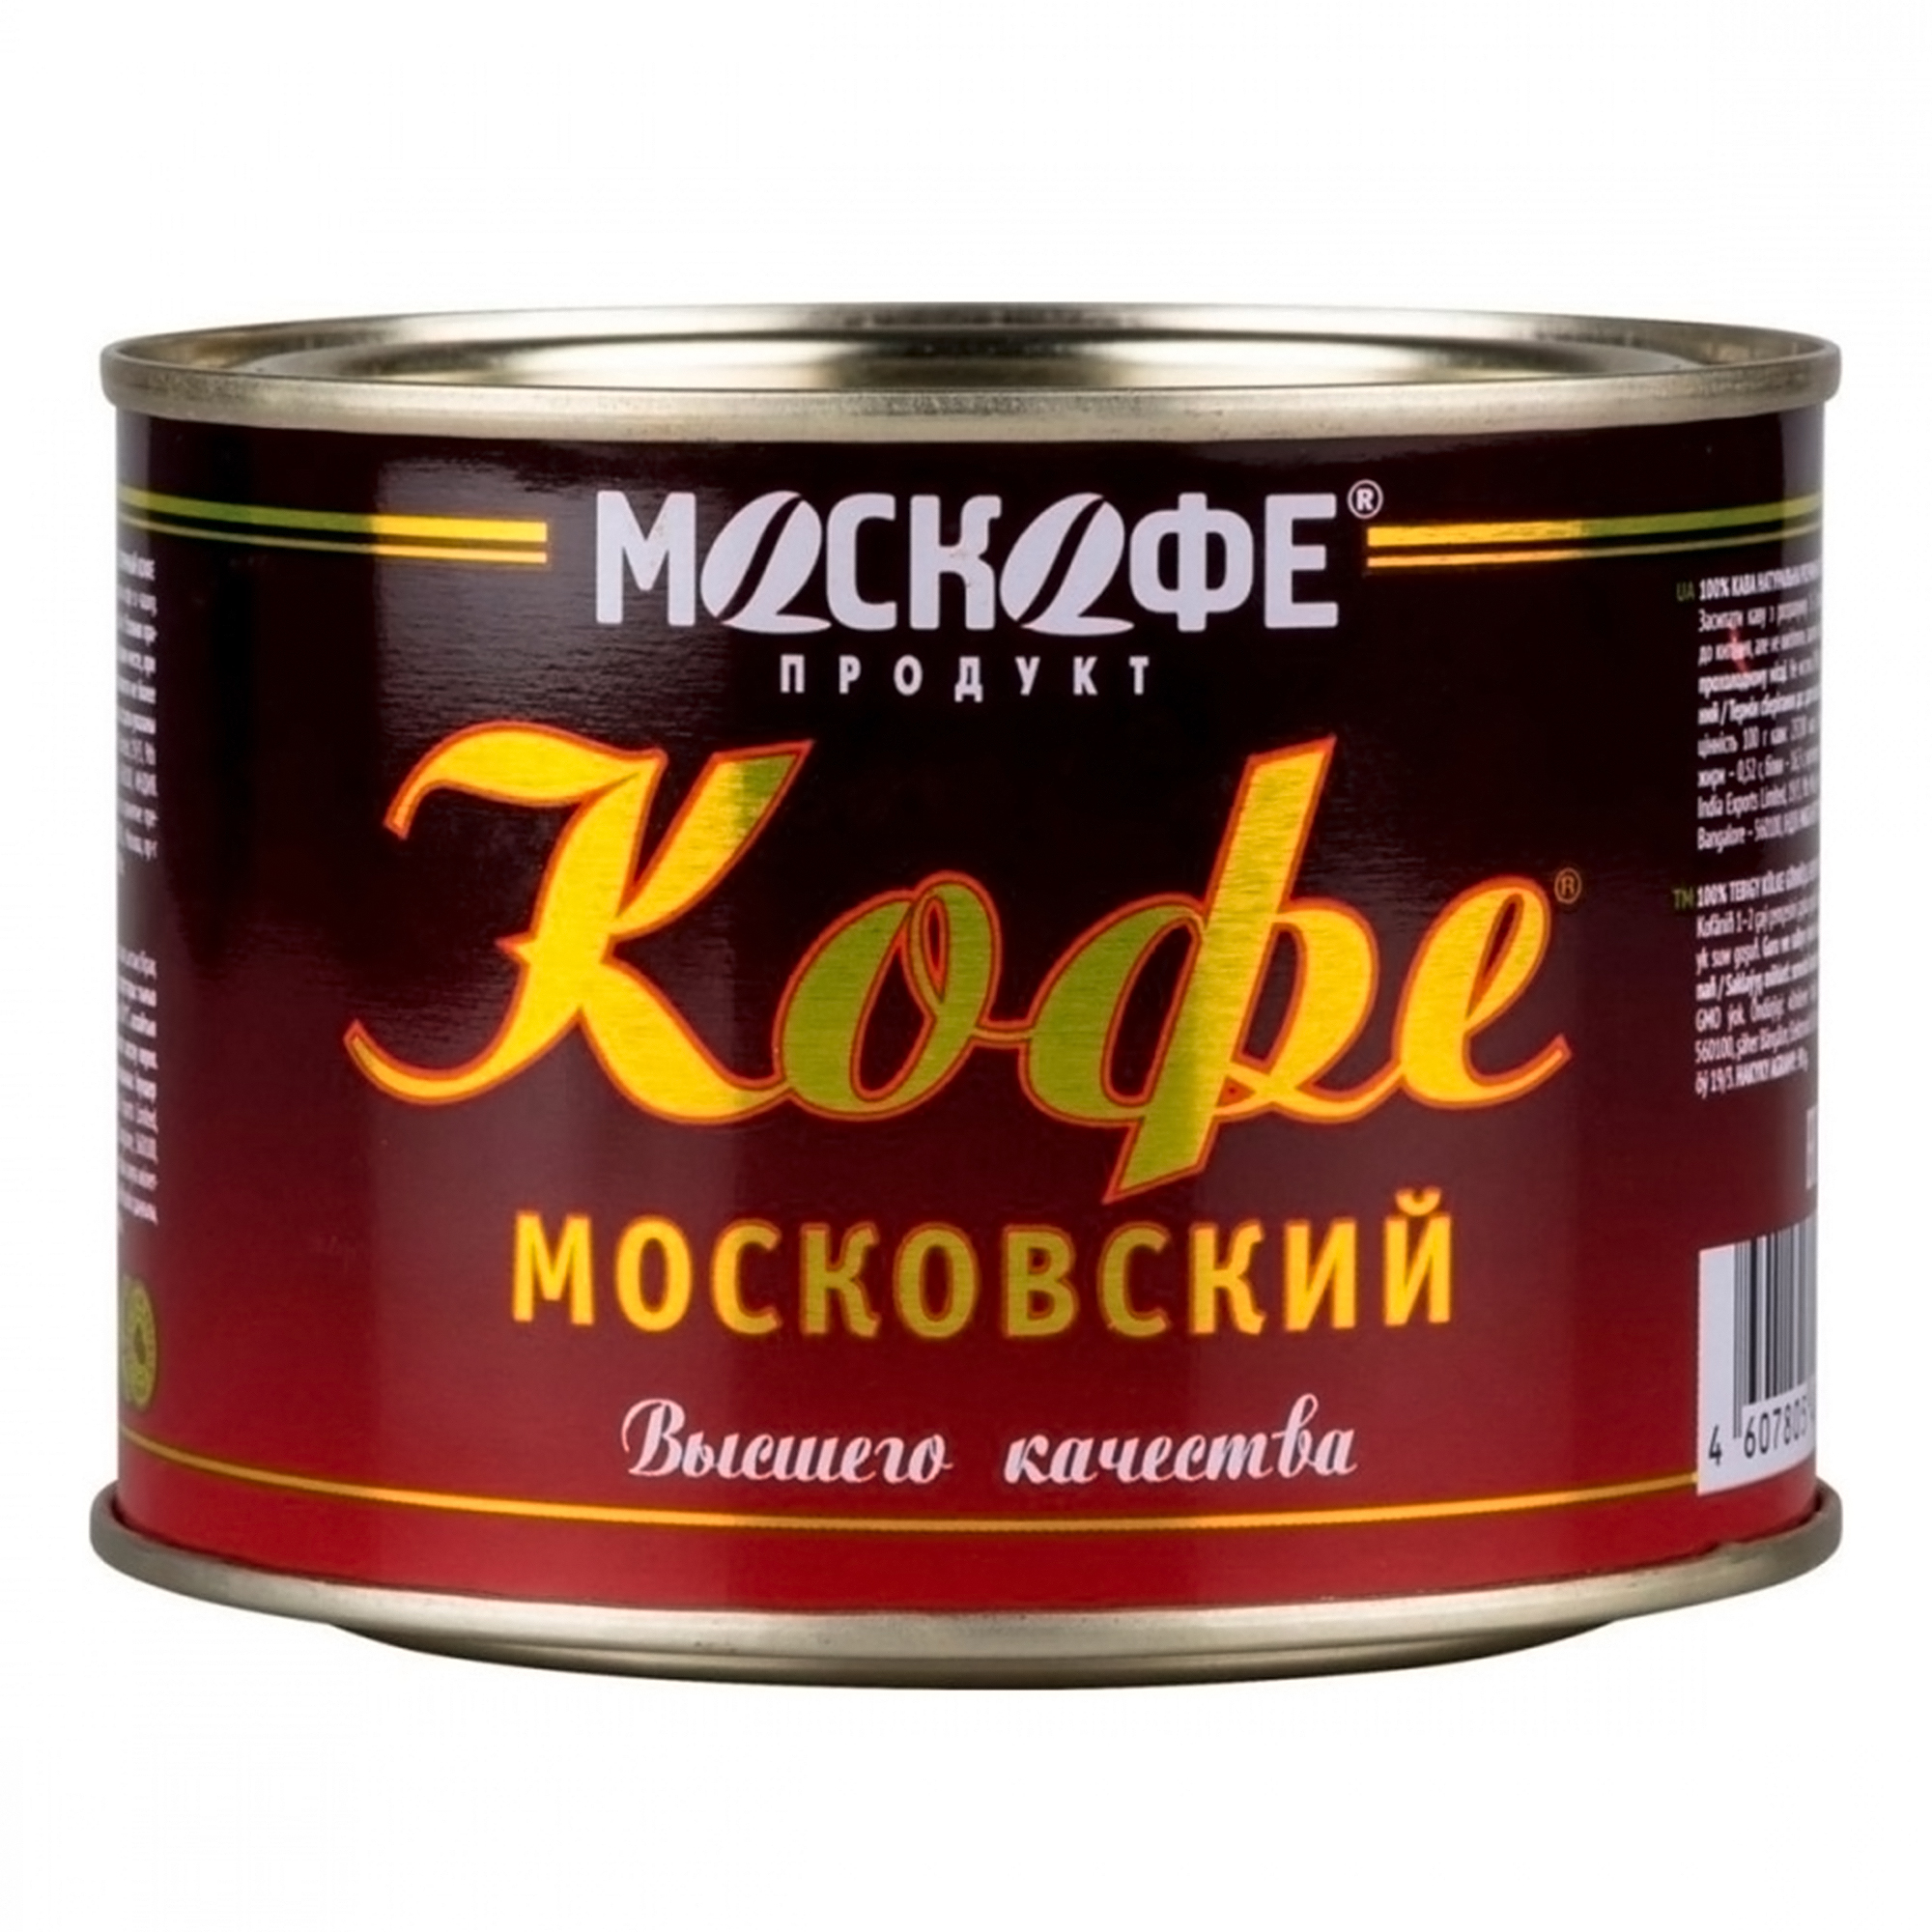 Кофе МосКофе Московский, растворимый, 45 г кофе москофе московский порошок